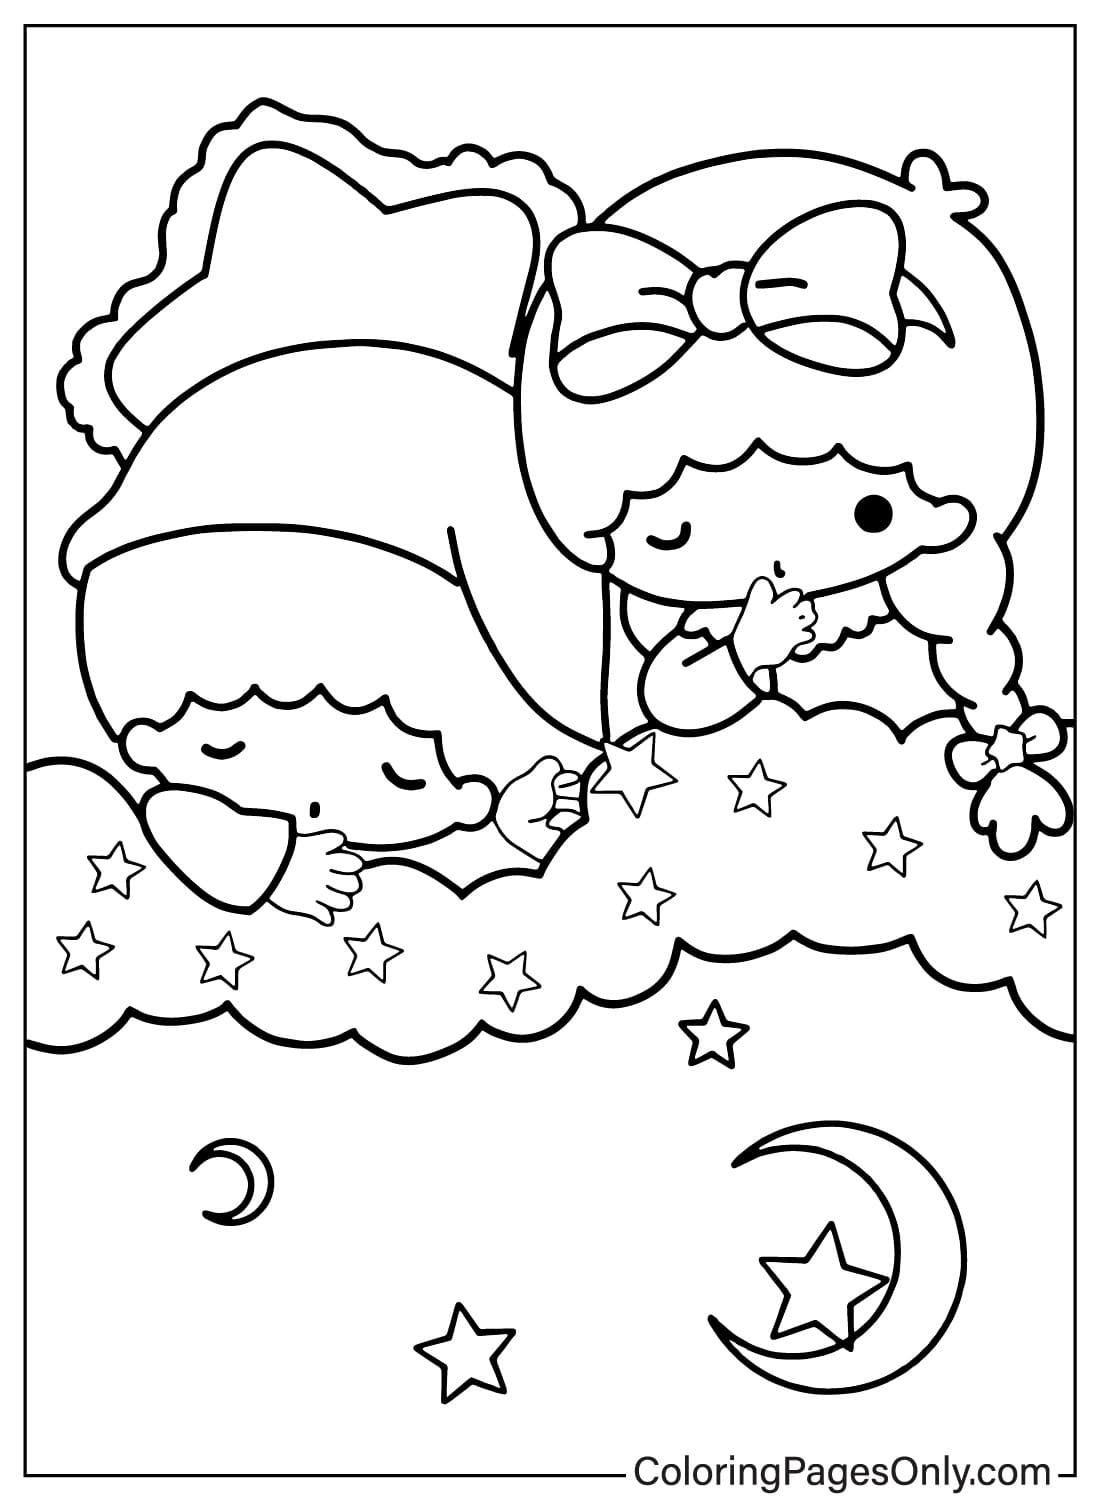 Página para colorear gratis de Lala y Kiki de Little Twin Stars